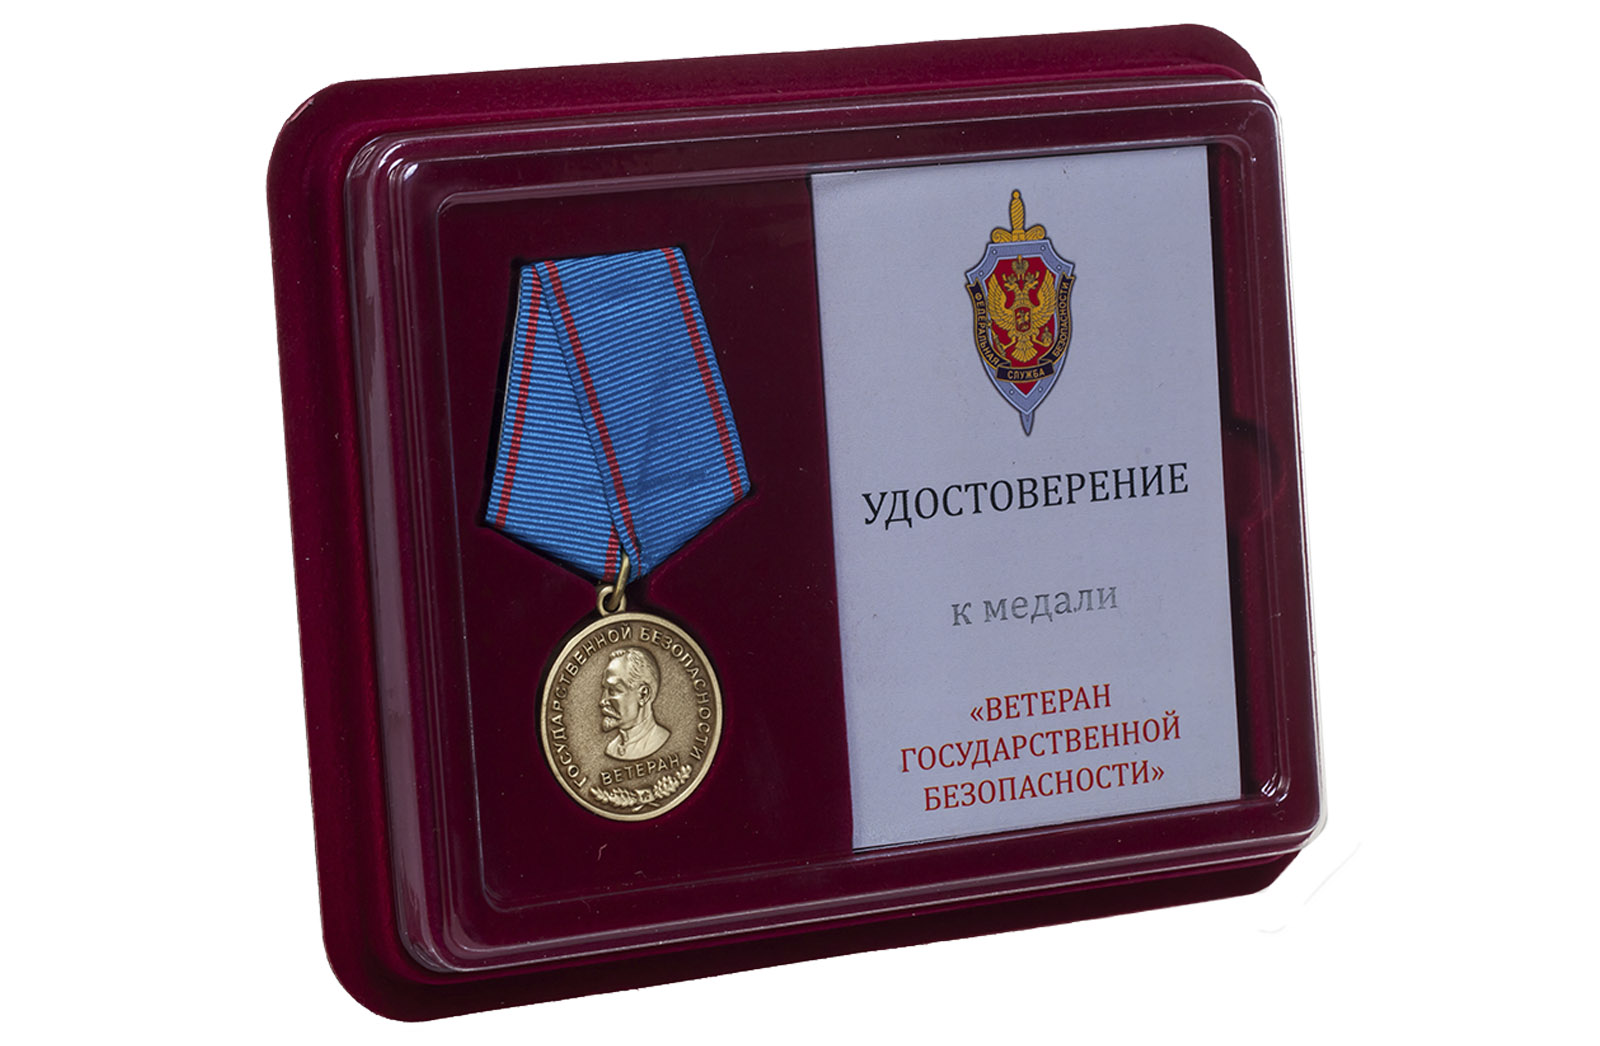 Купить медаль Ветерану Государственной безопасности в подарок